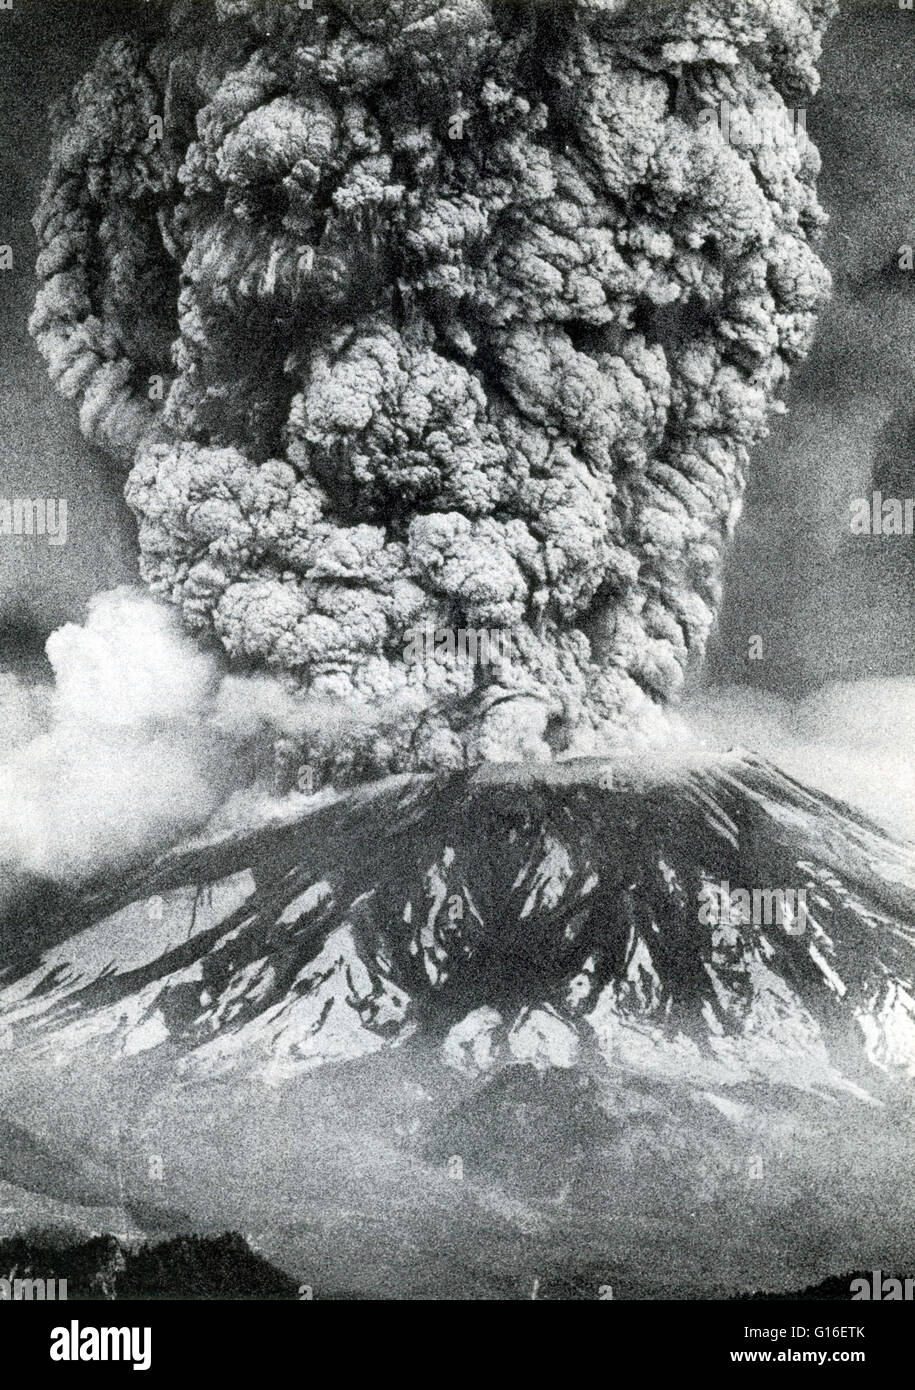 Il Monte Sant Helens, Washington, è il vulcano più attivo nella cascata gamma. Il primo segno di attività a Monte Sant Helens nella primavera del 1980 è stata una serie di piccoli terremoti che è iniziato il 16 marzo. Esplosioni di vapore su Marzo 27 eiettato un cratere thr Foto Stock